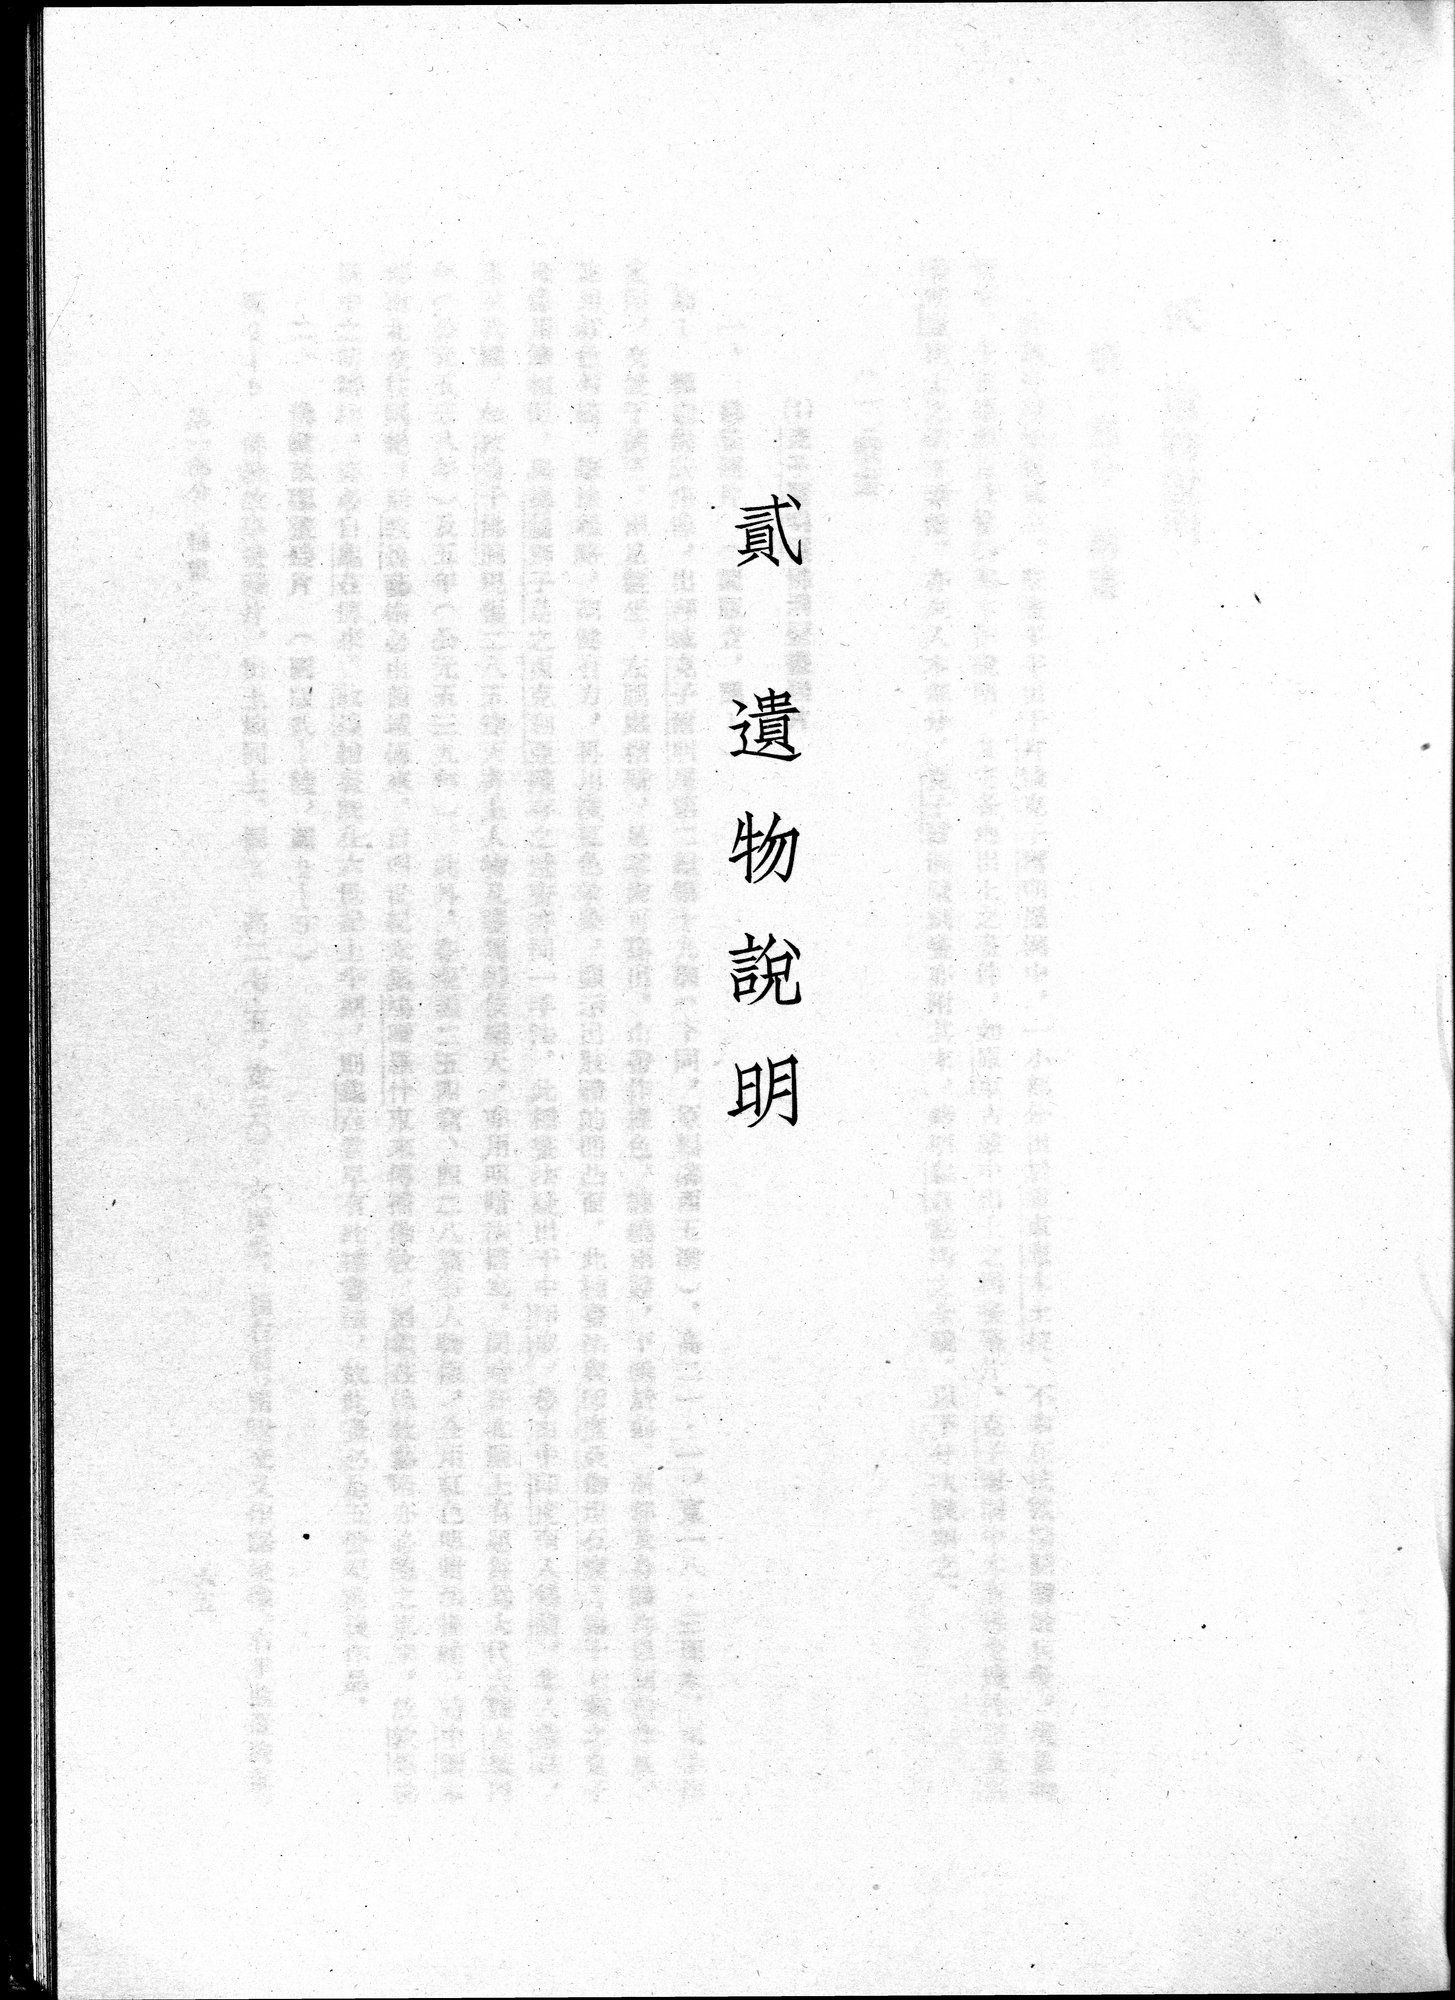 塔里木盆地考古記 : vol.1 / Page 127 (Grayscale High Resolution Image)